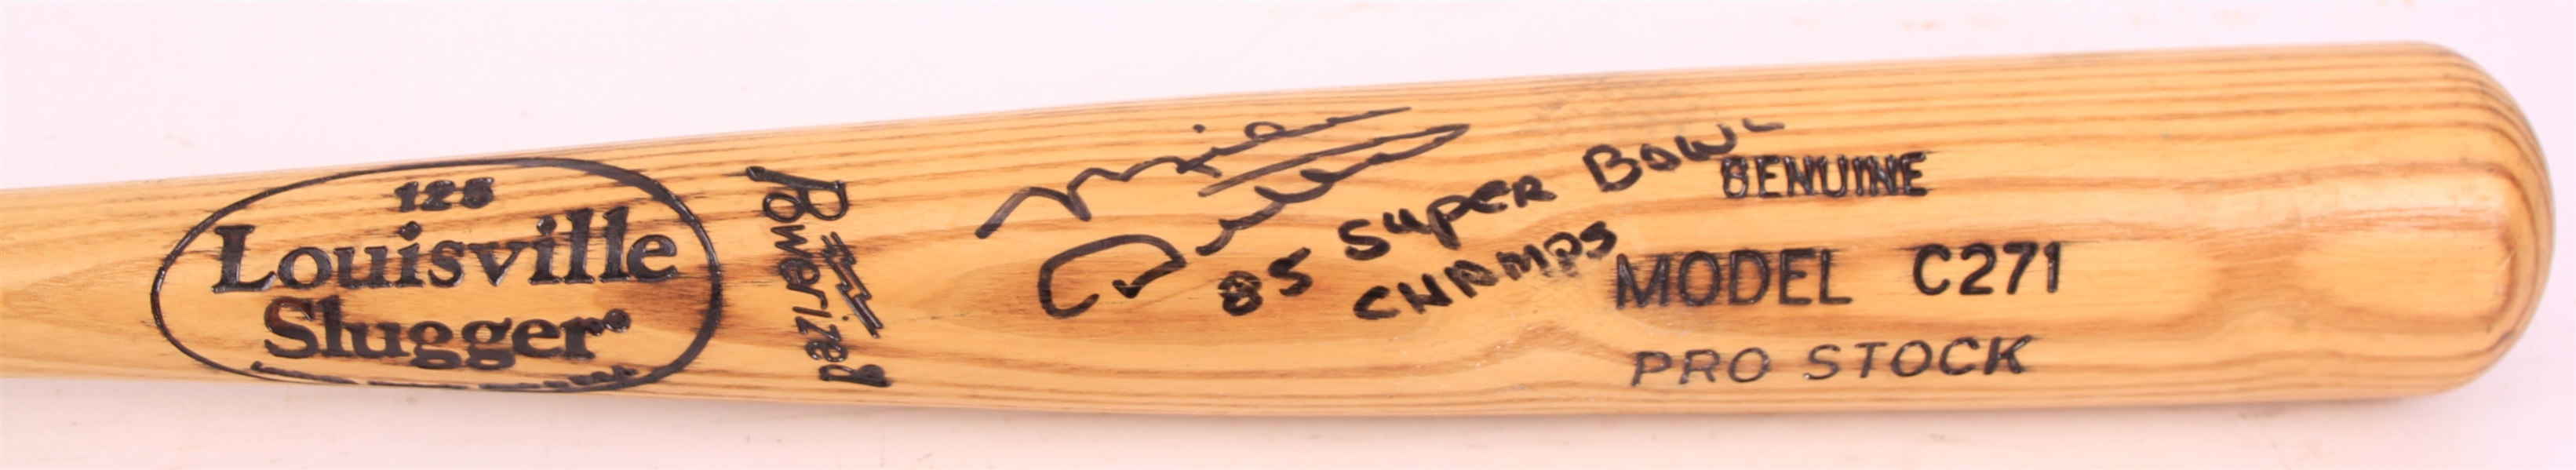 1990s Mike Ditka Chicago Bears Signed Louisville Slugger Bat (*PSA/DNA*)